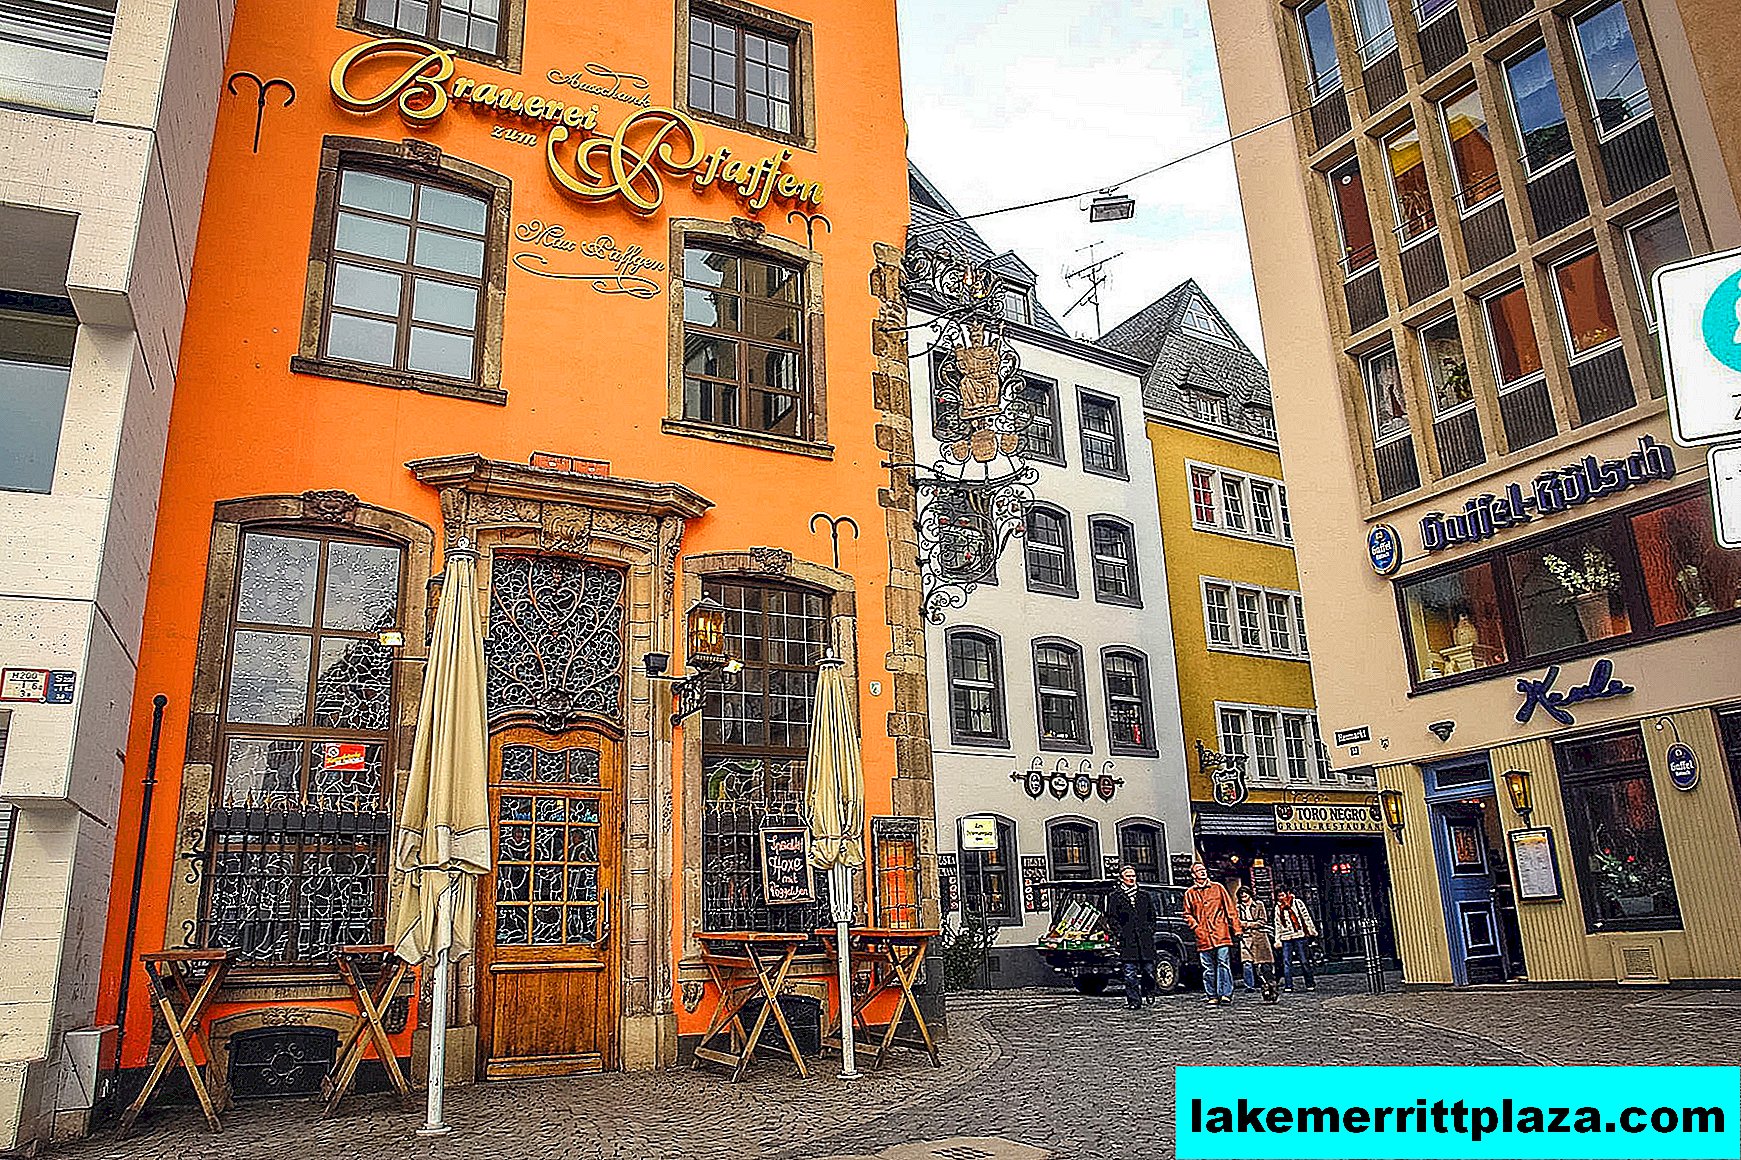 Bier und Restaurants in der Altstadt